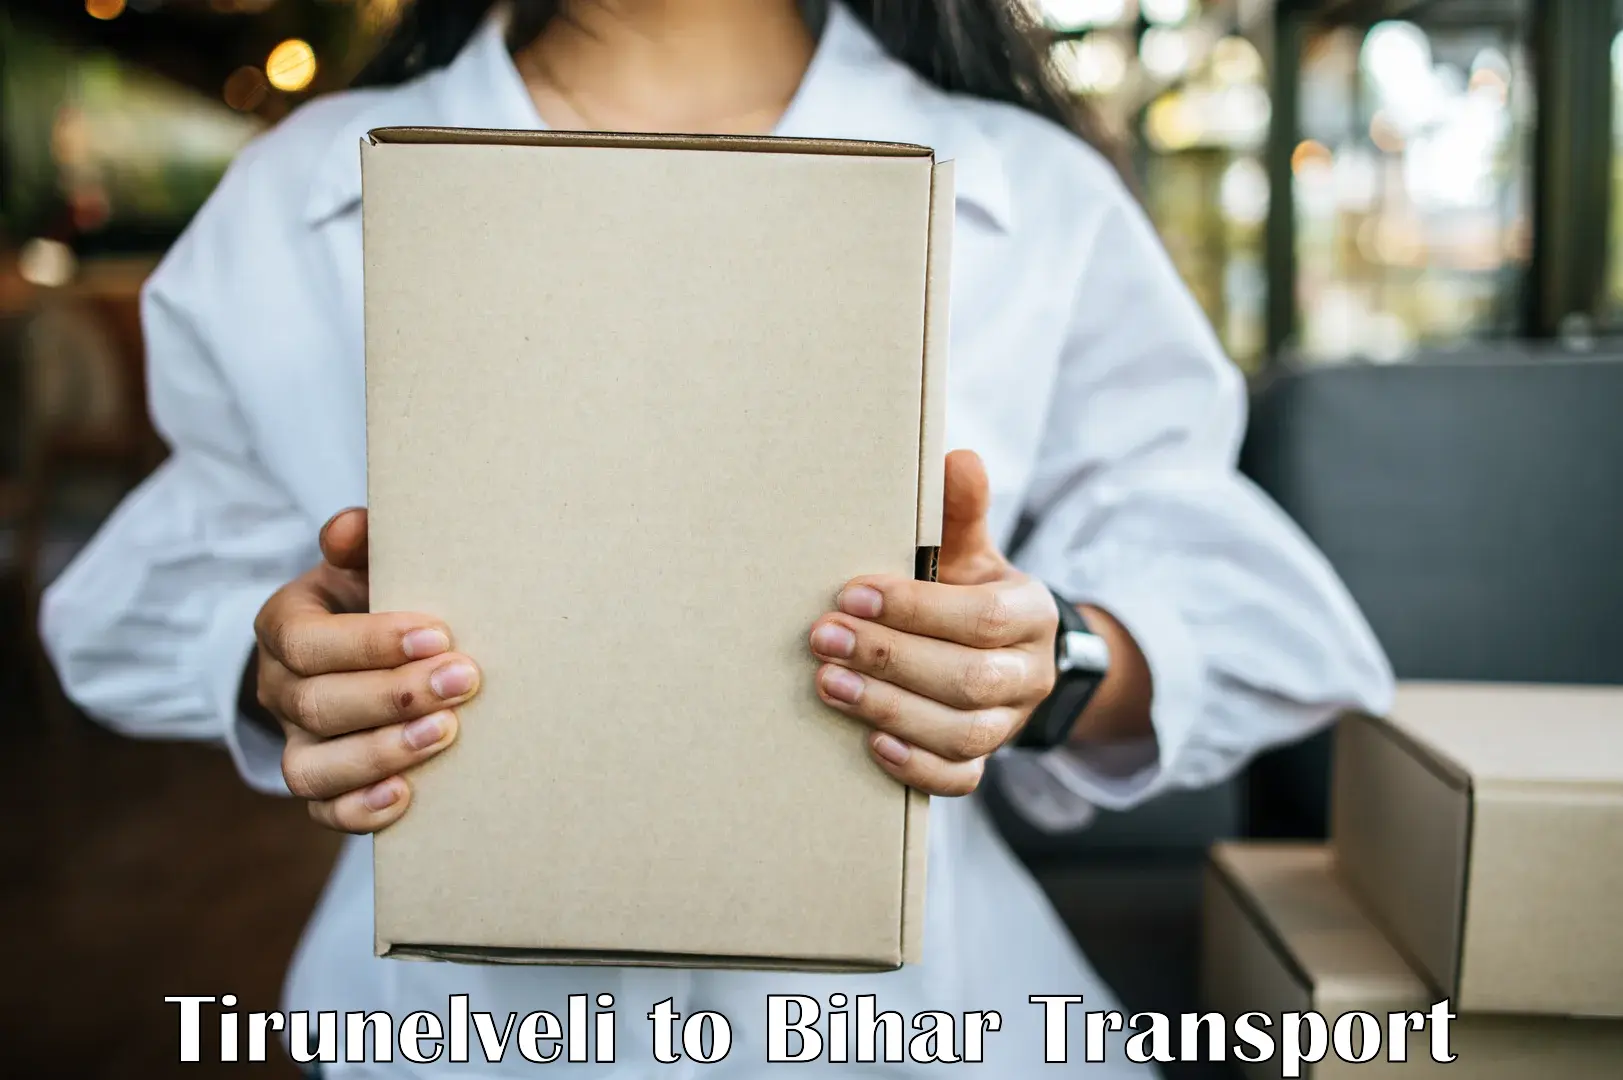 Part load transport service in India Tirunelveli to IIIT Bhagalpur